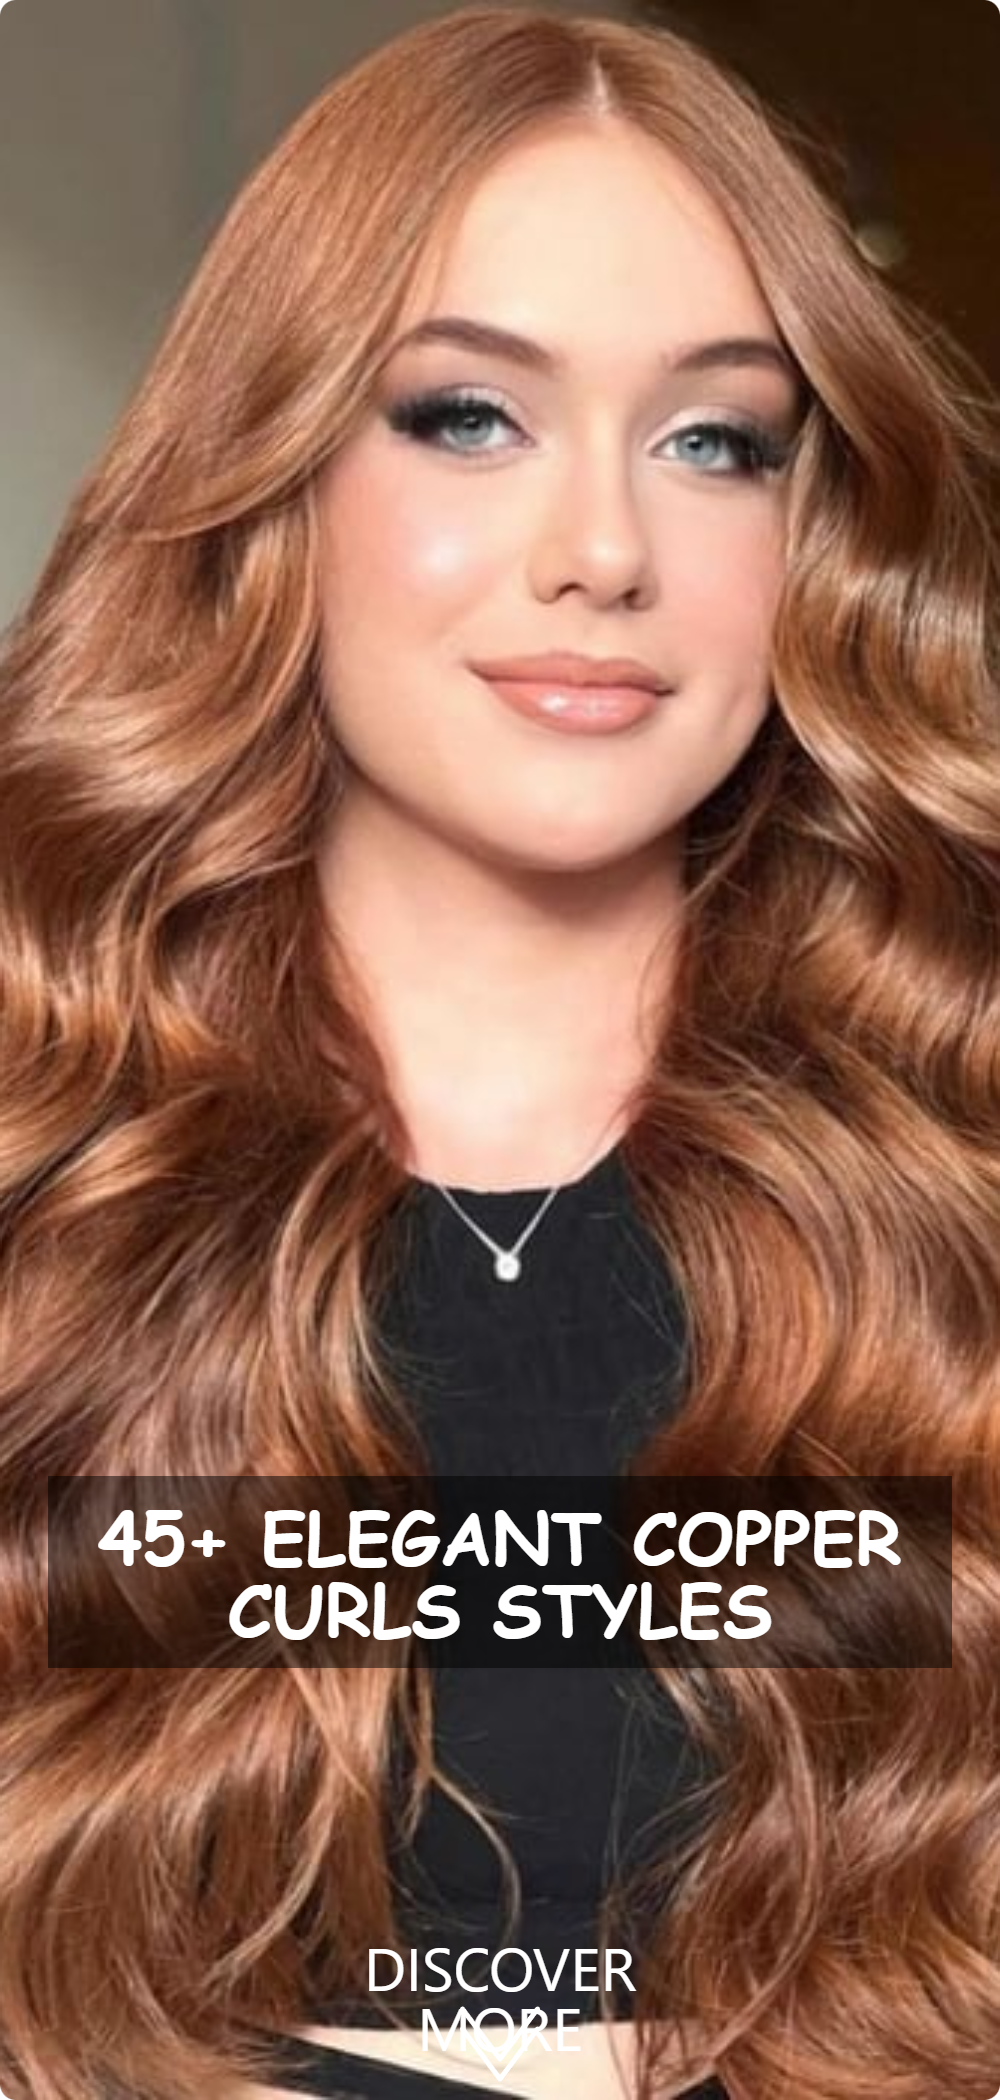 Elegant Copper Curls